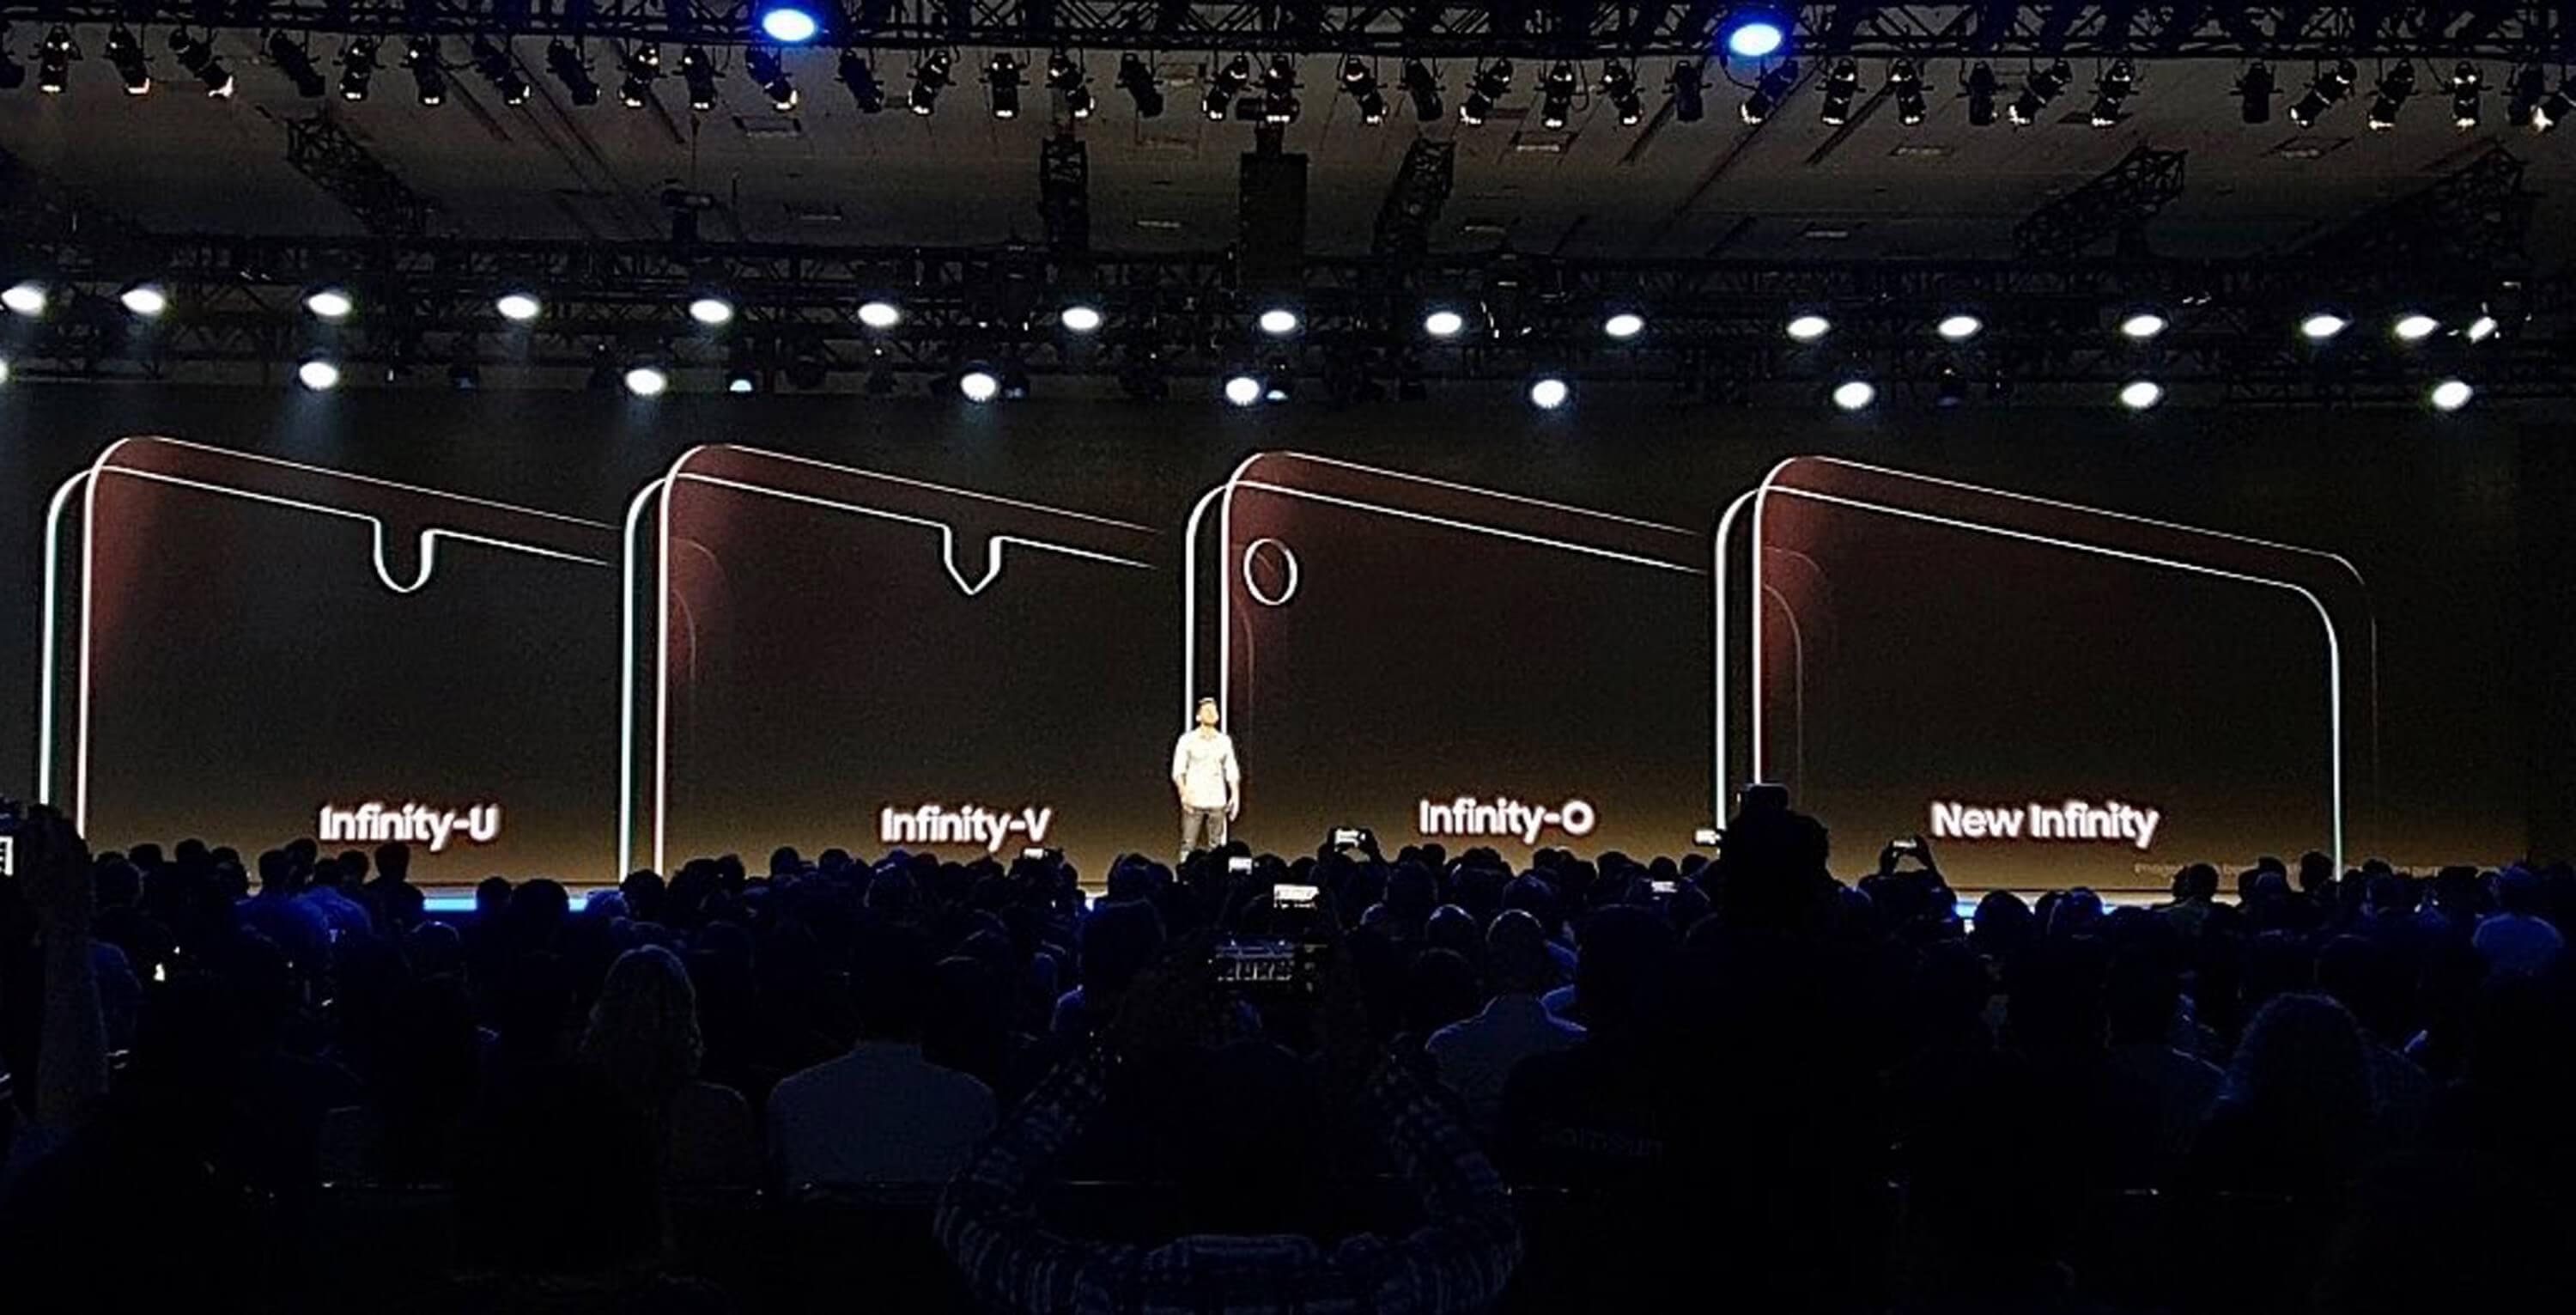 Samsung представила для смартфонов дисплеи с вырезами